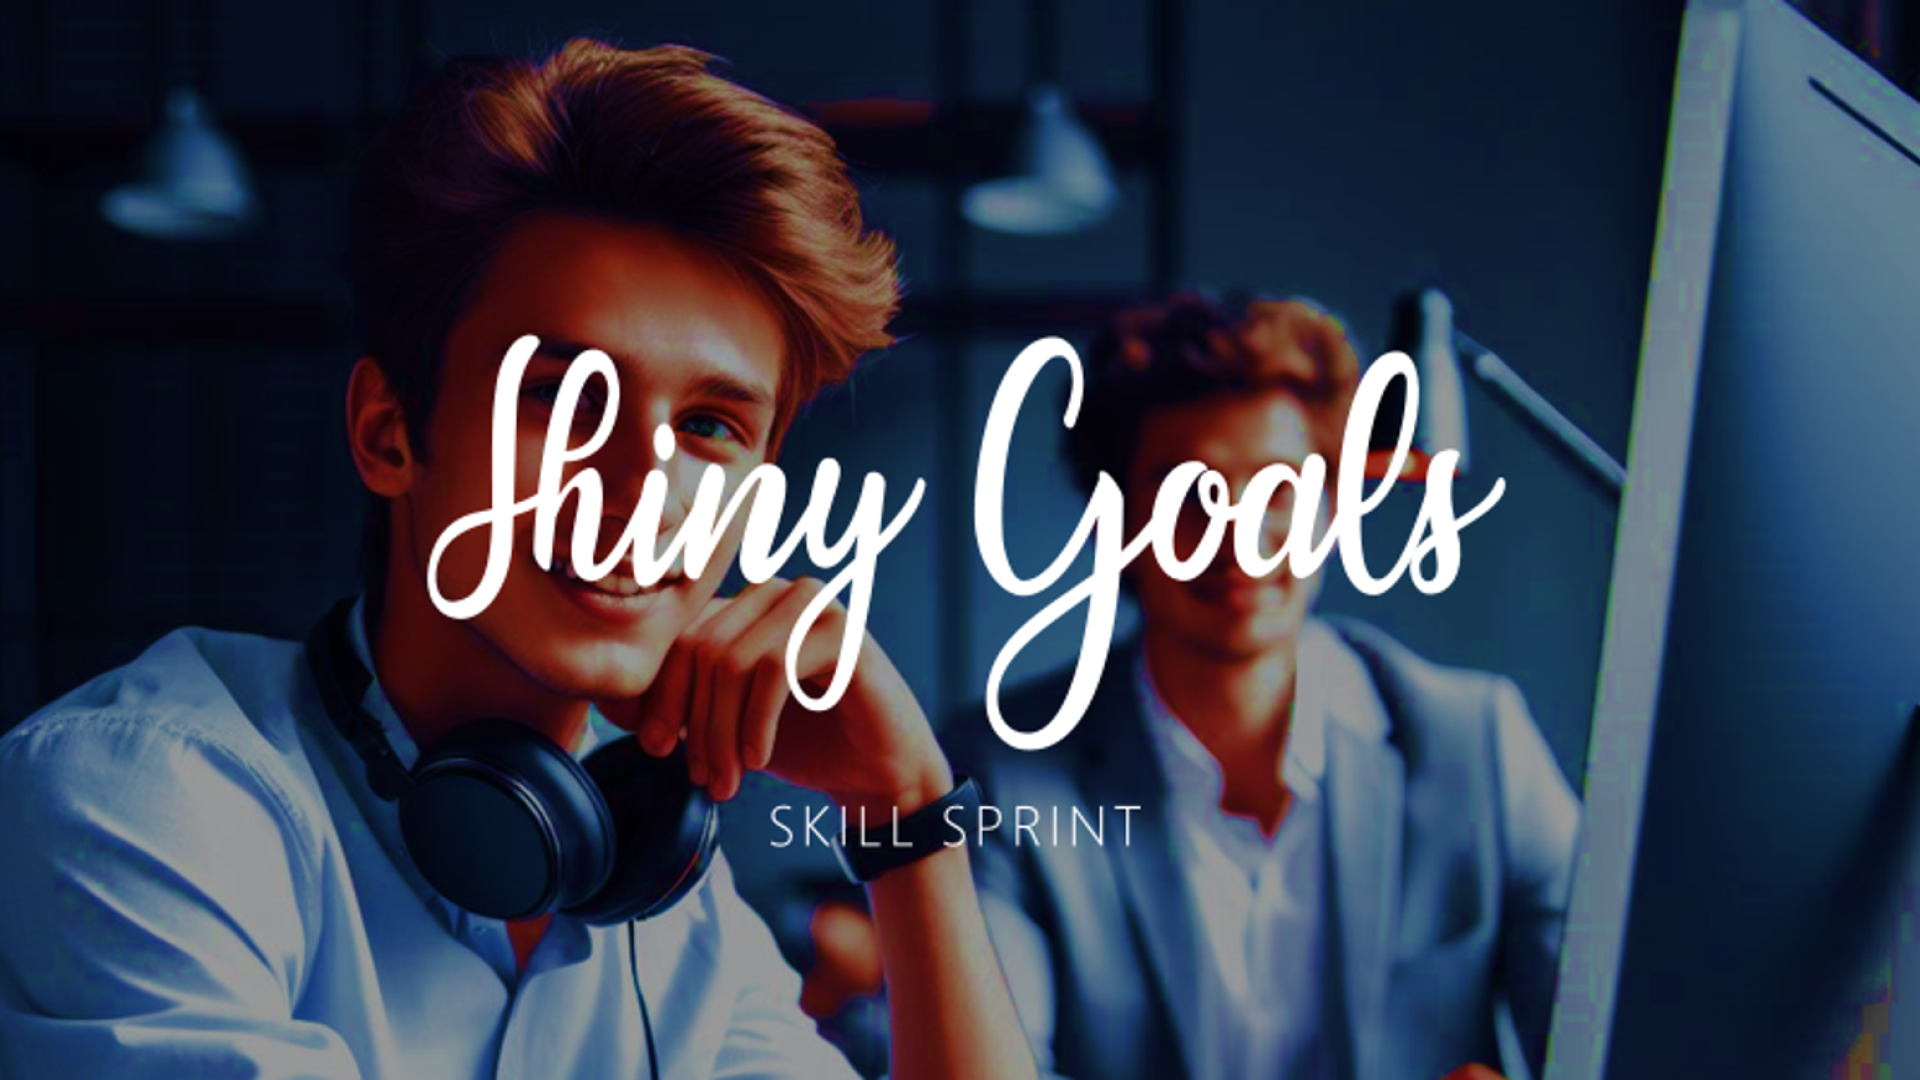 Skill Sprint - Shiny Goals